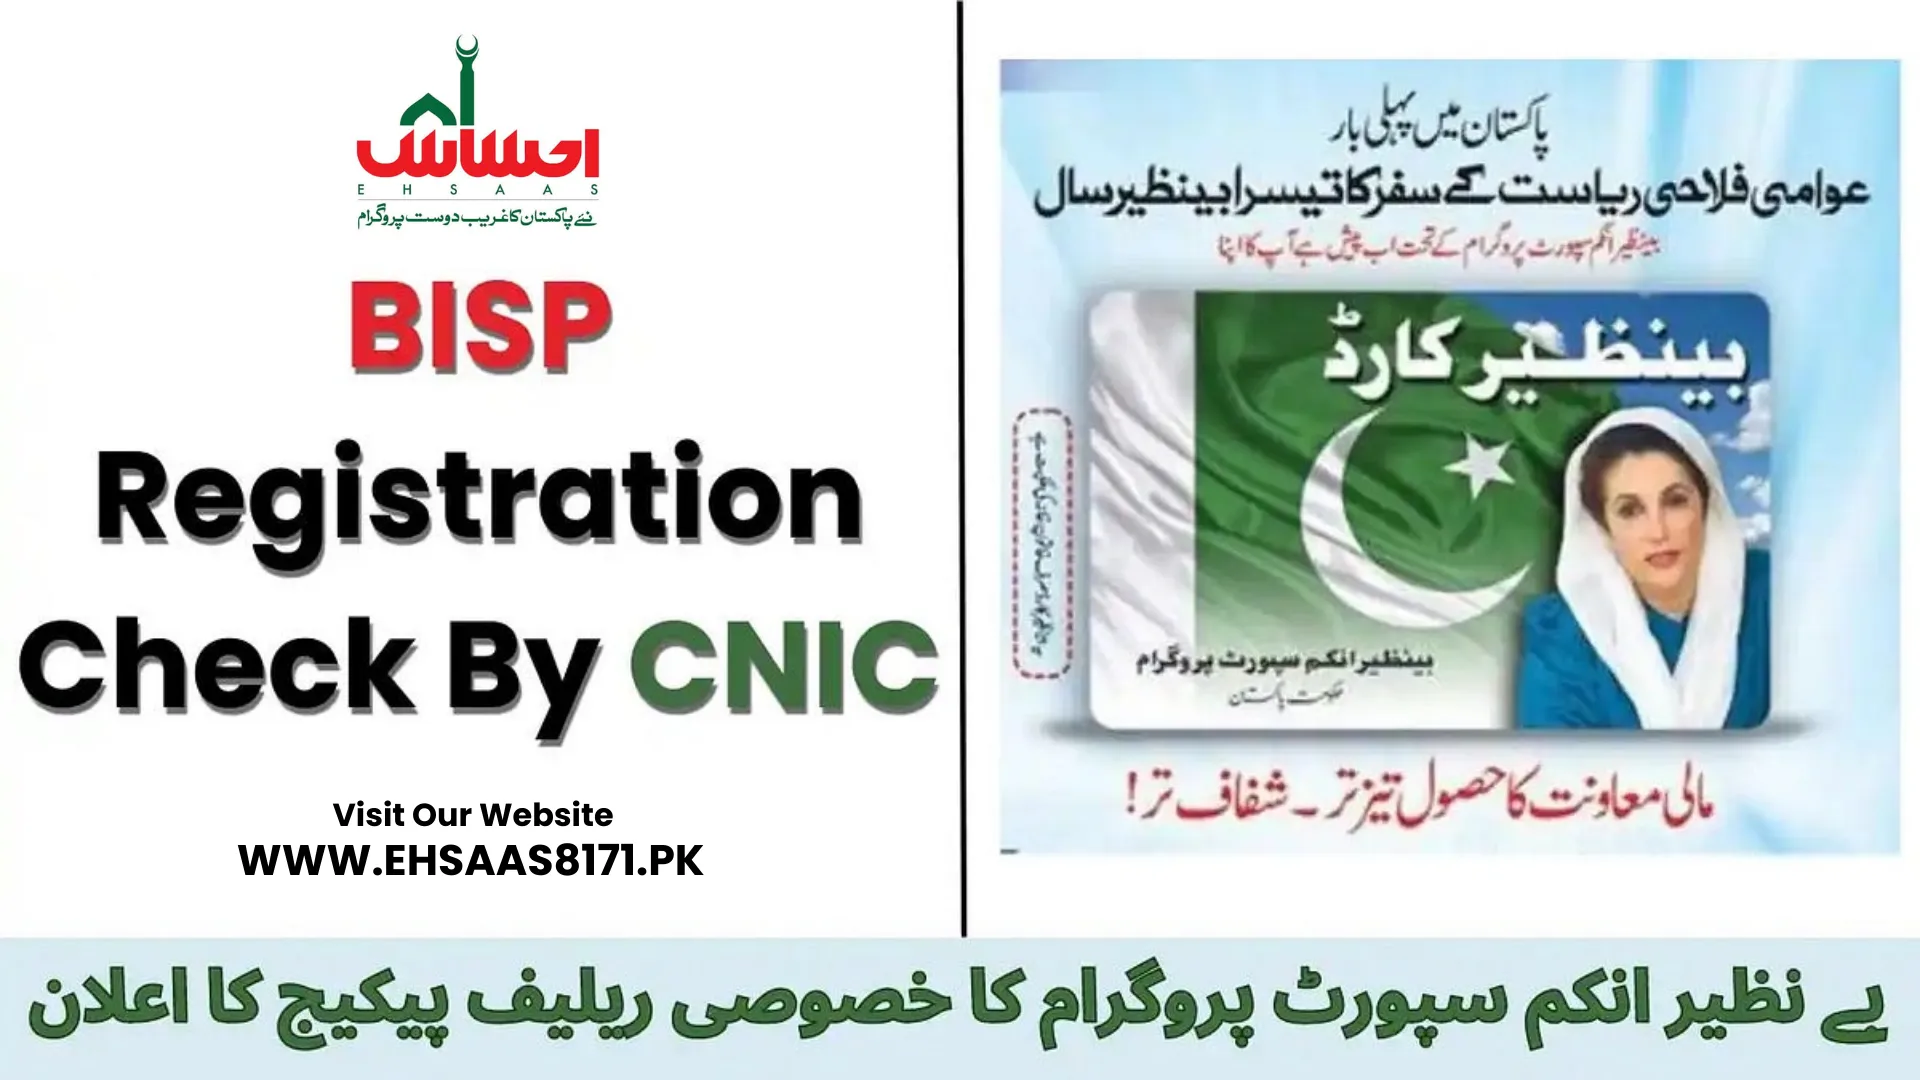 Bisp Registration Check By CNIC